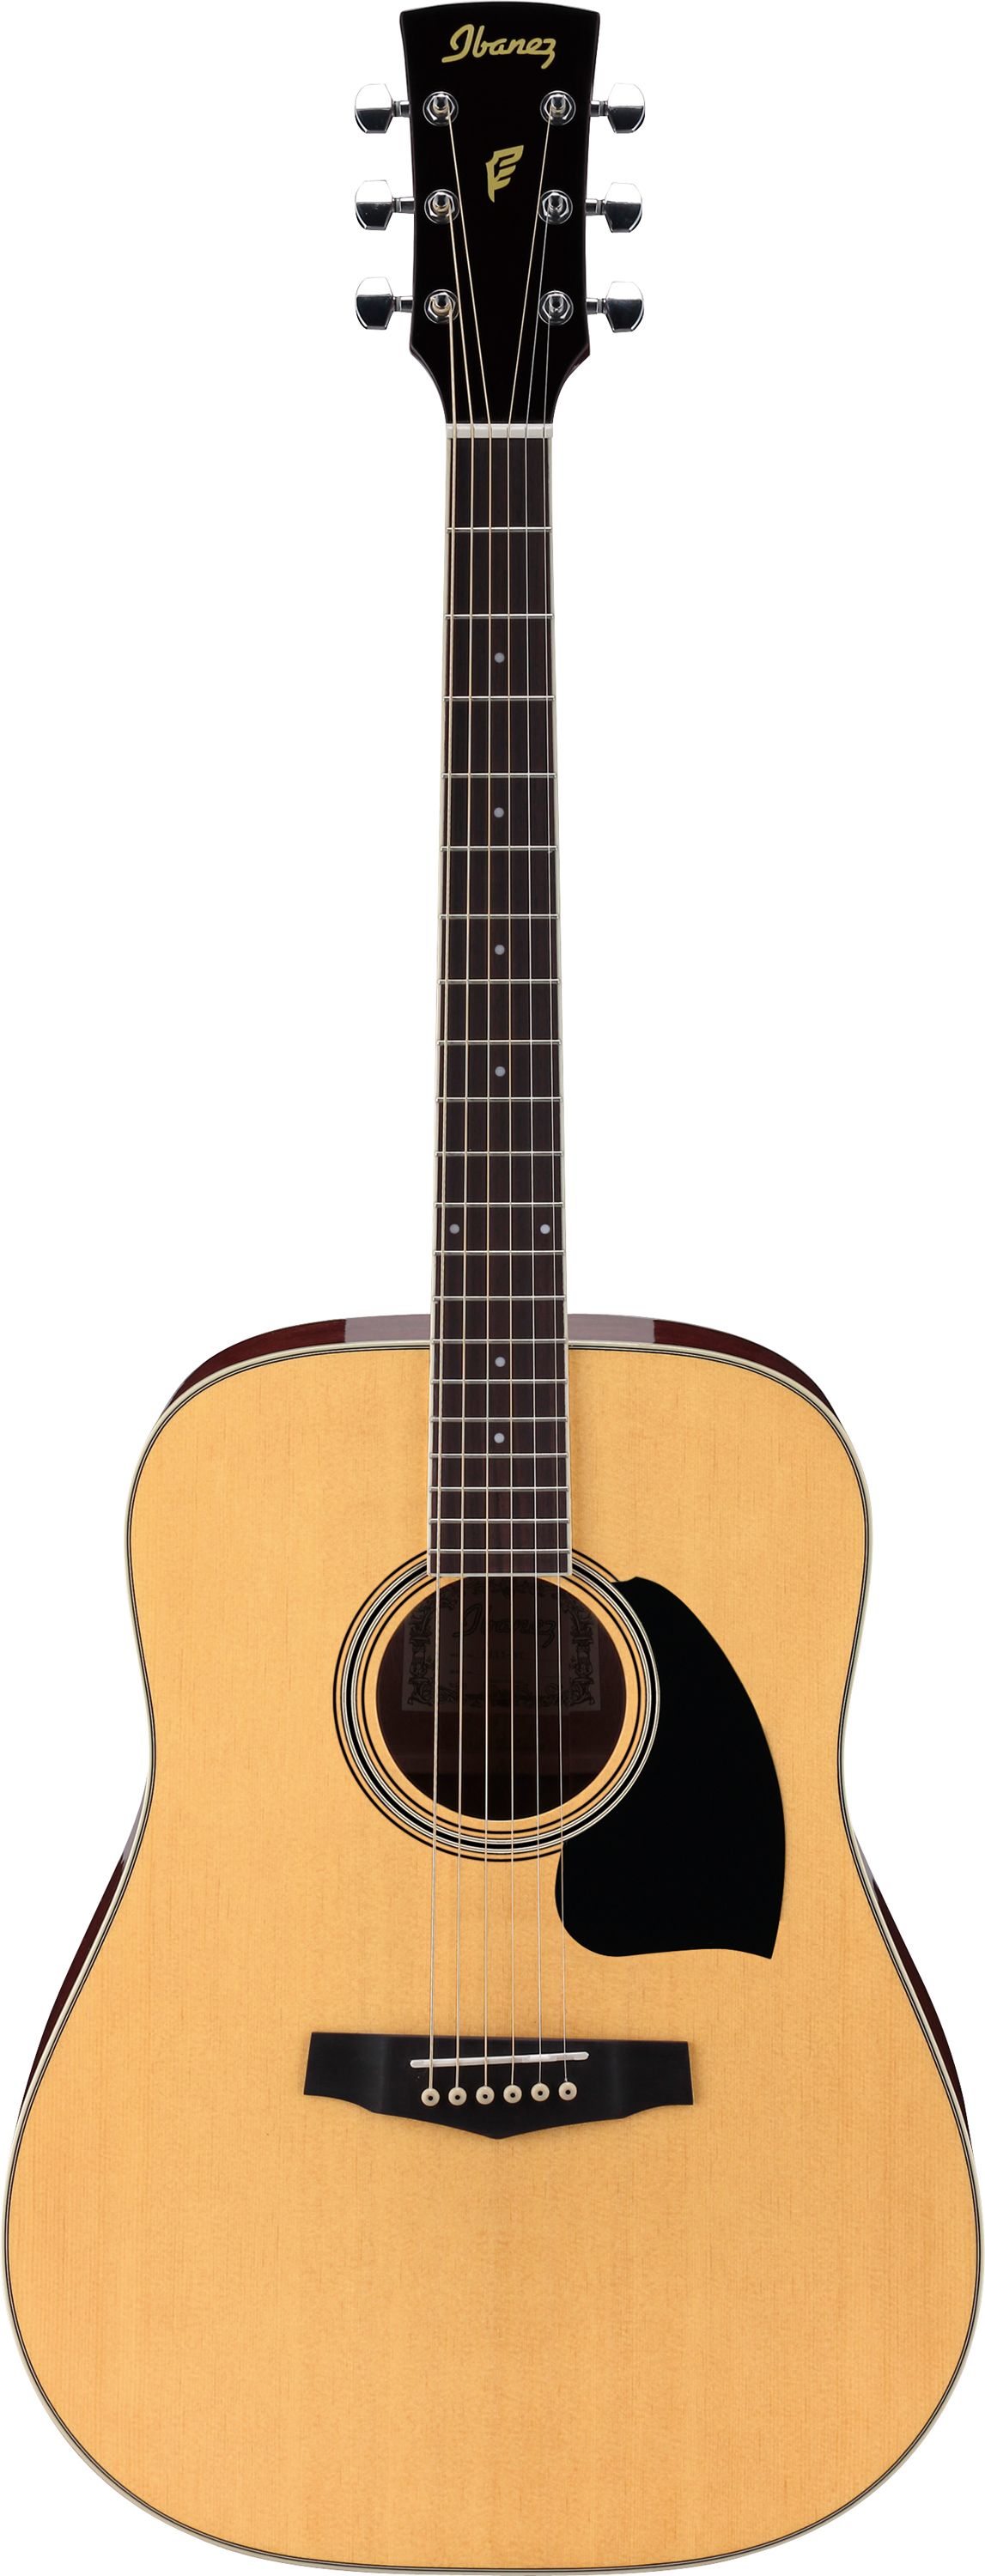 IBANEZ PF15-NT акустическая гитара, цвет натуральный